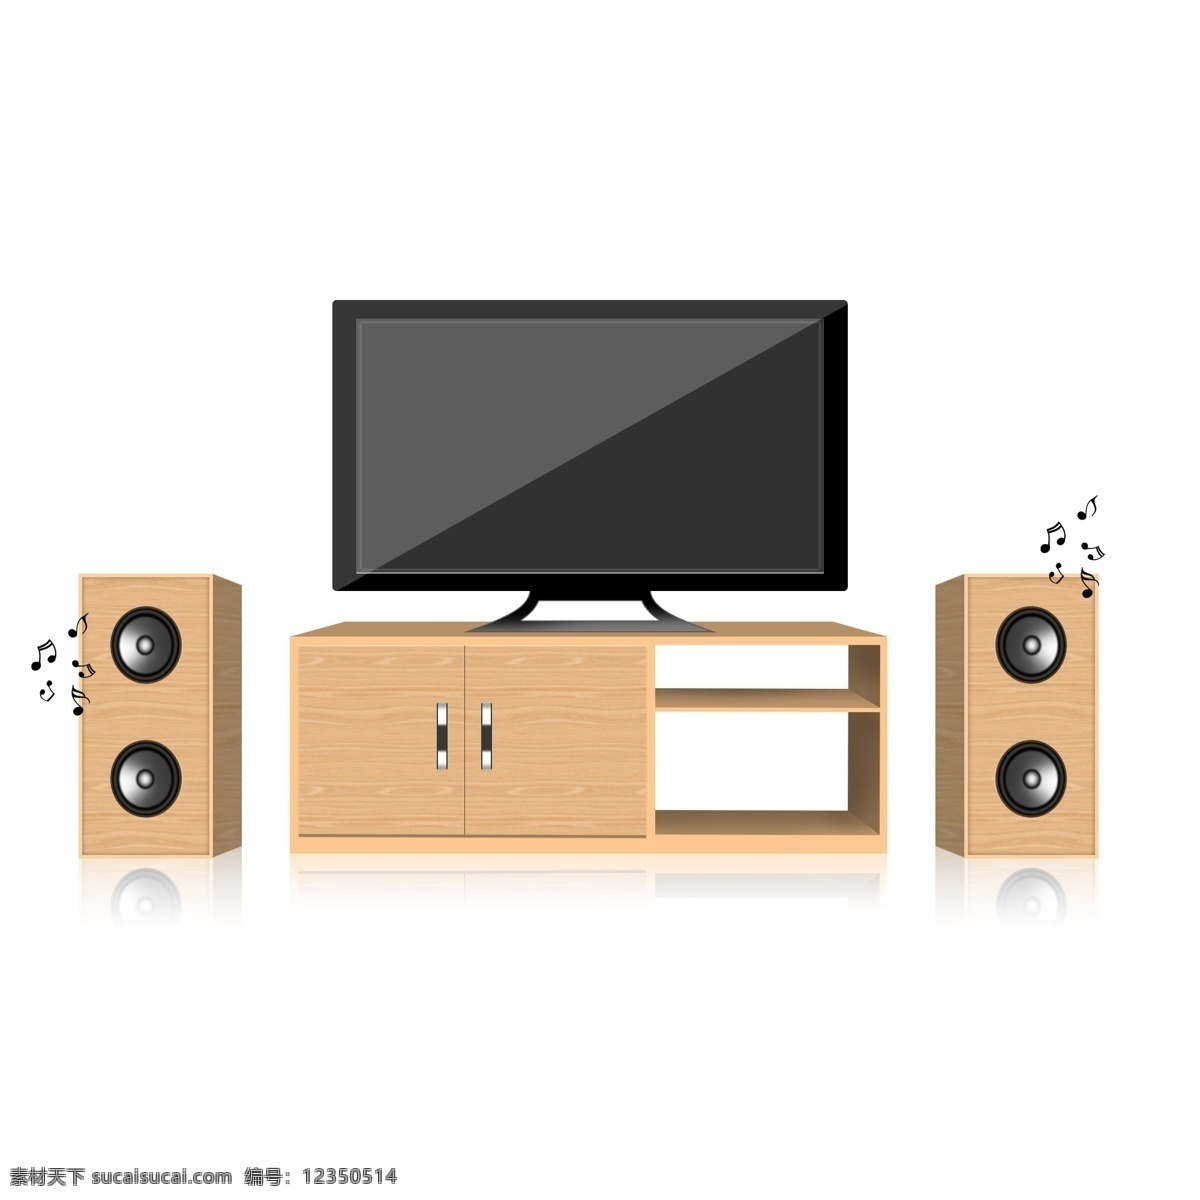 生活用品 电视 音响 设备 效果 图案 音箱 桌子 木桌子 家居设备